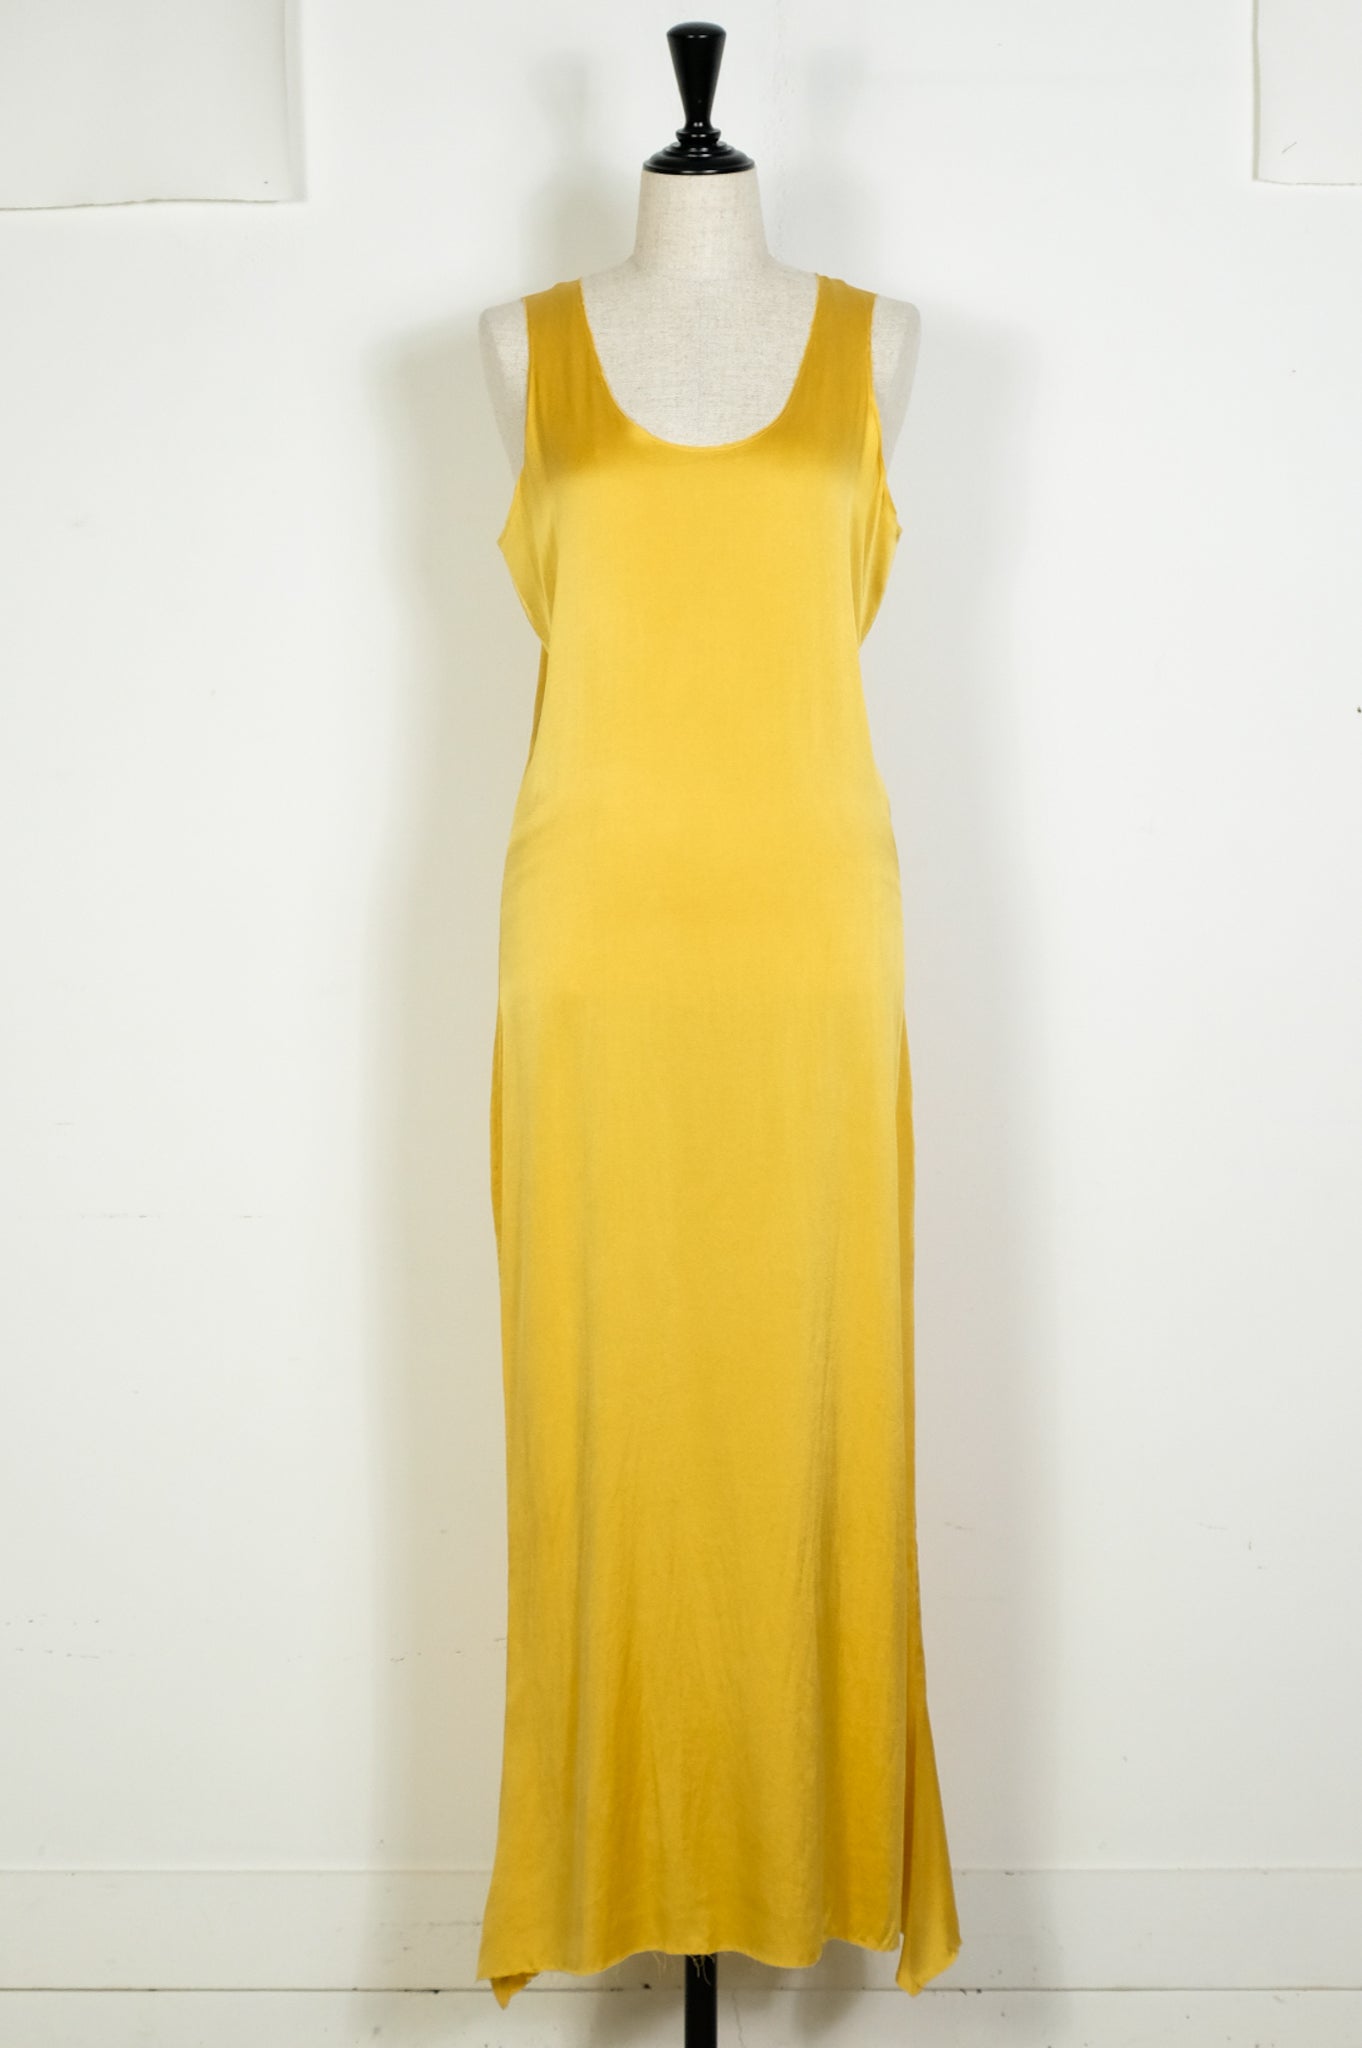 Gabriela Coll Garments "NO.201 STRETCH SILK DRESS"